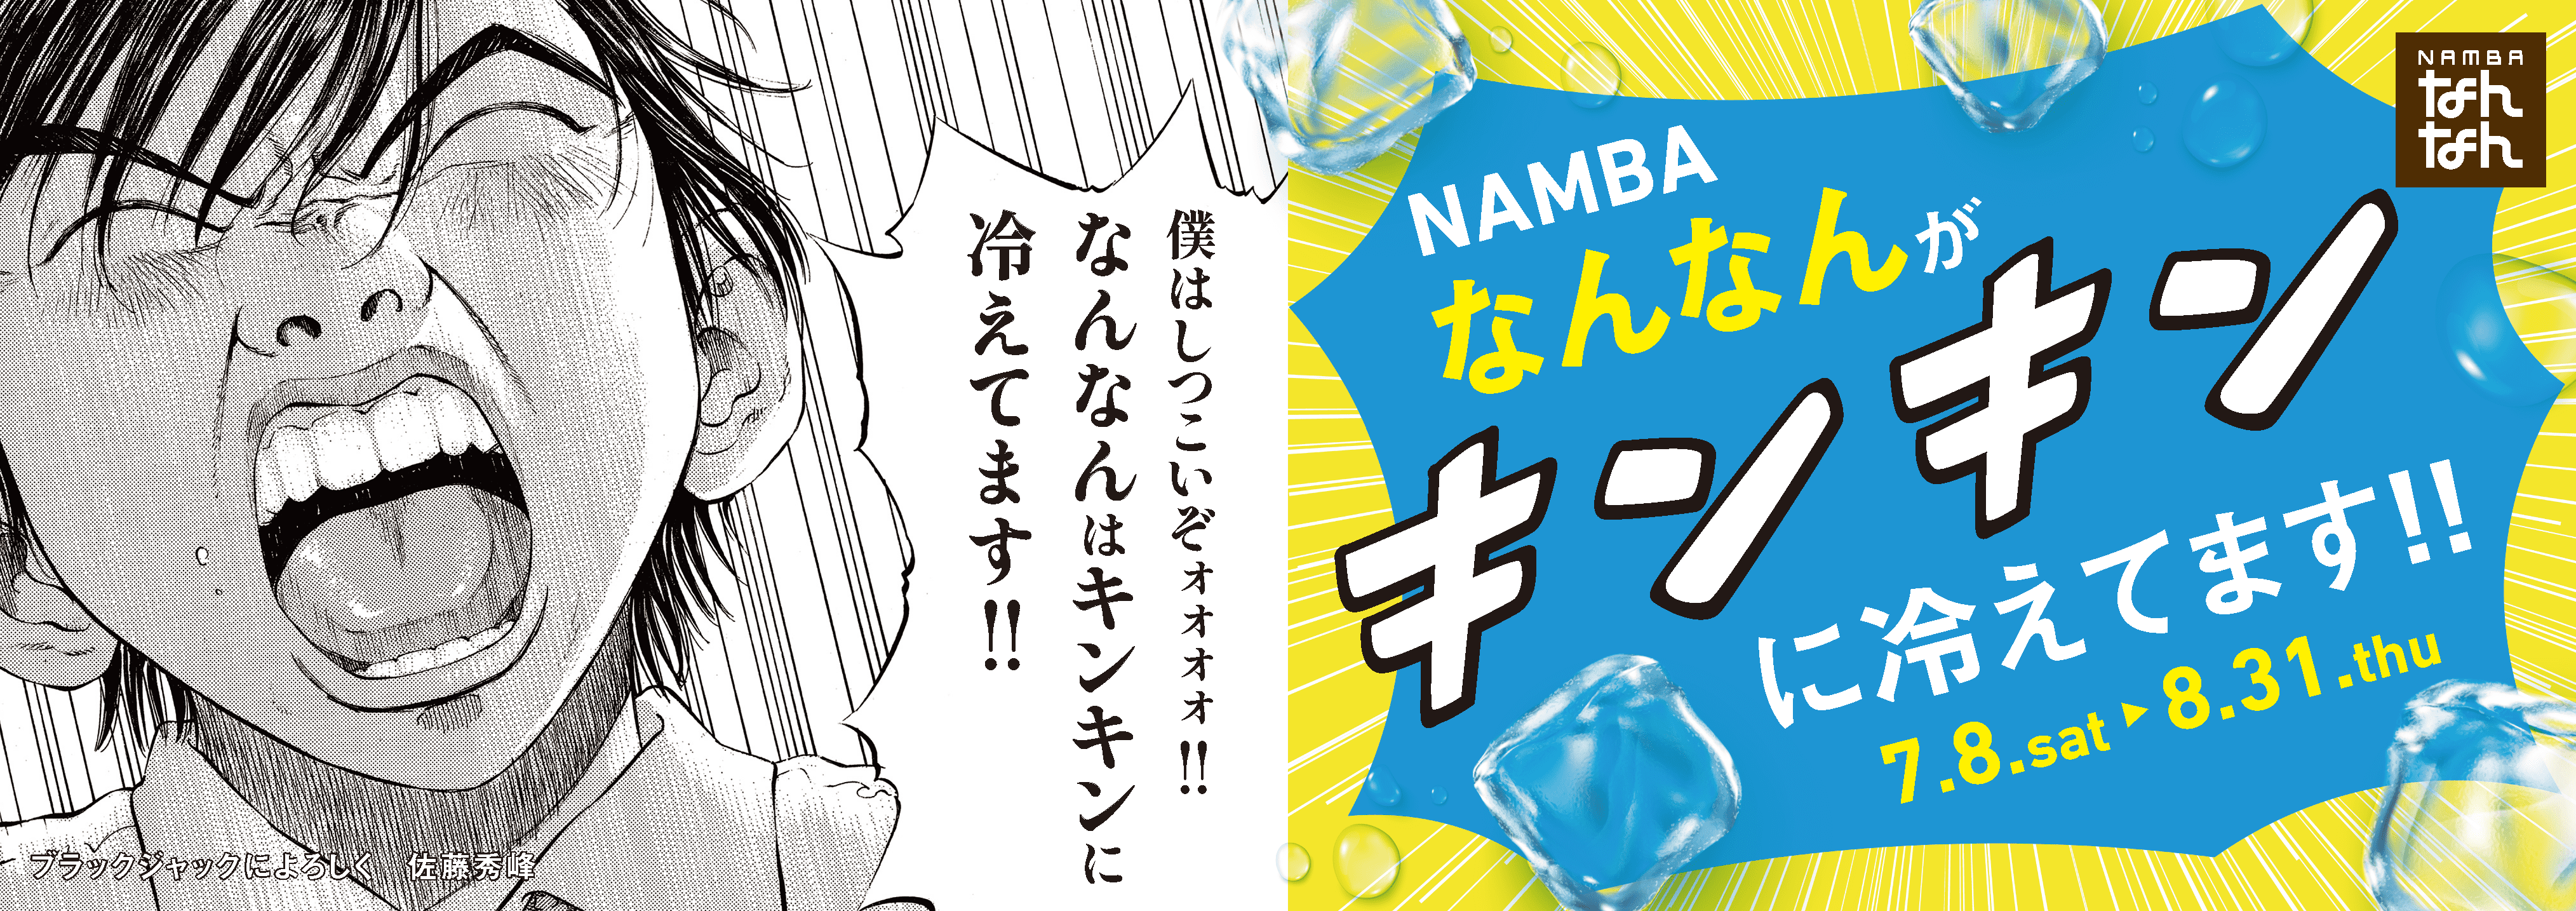 NAMBAなんなん　2023 Summer Fair　
人気漫画「ブラックジャックによろしく」とコラボ　
7月8日からキンキンに冷やしてます！難波に来たら地下へGO！
「NAMBAなんなんがキンキンに冷えてます！！」